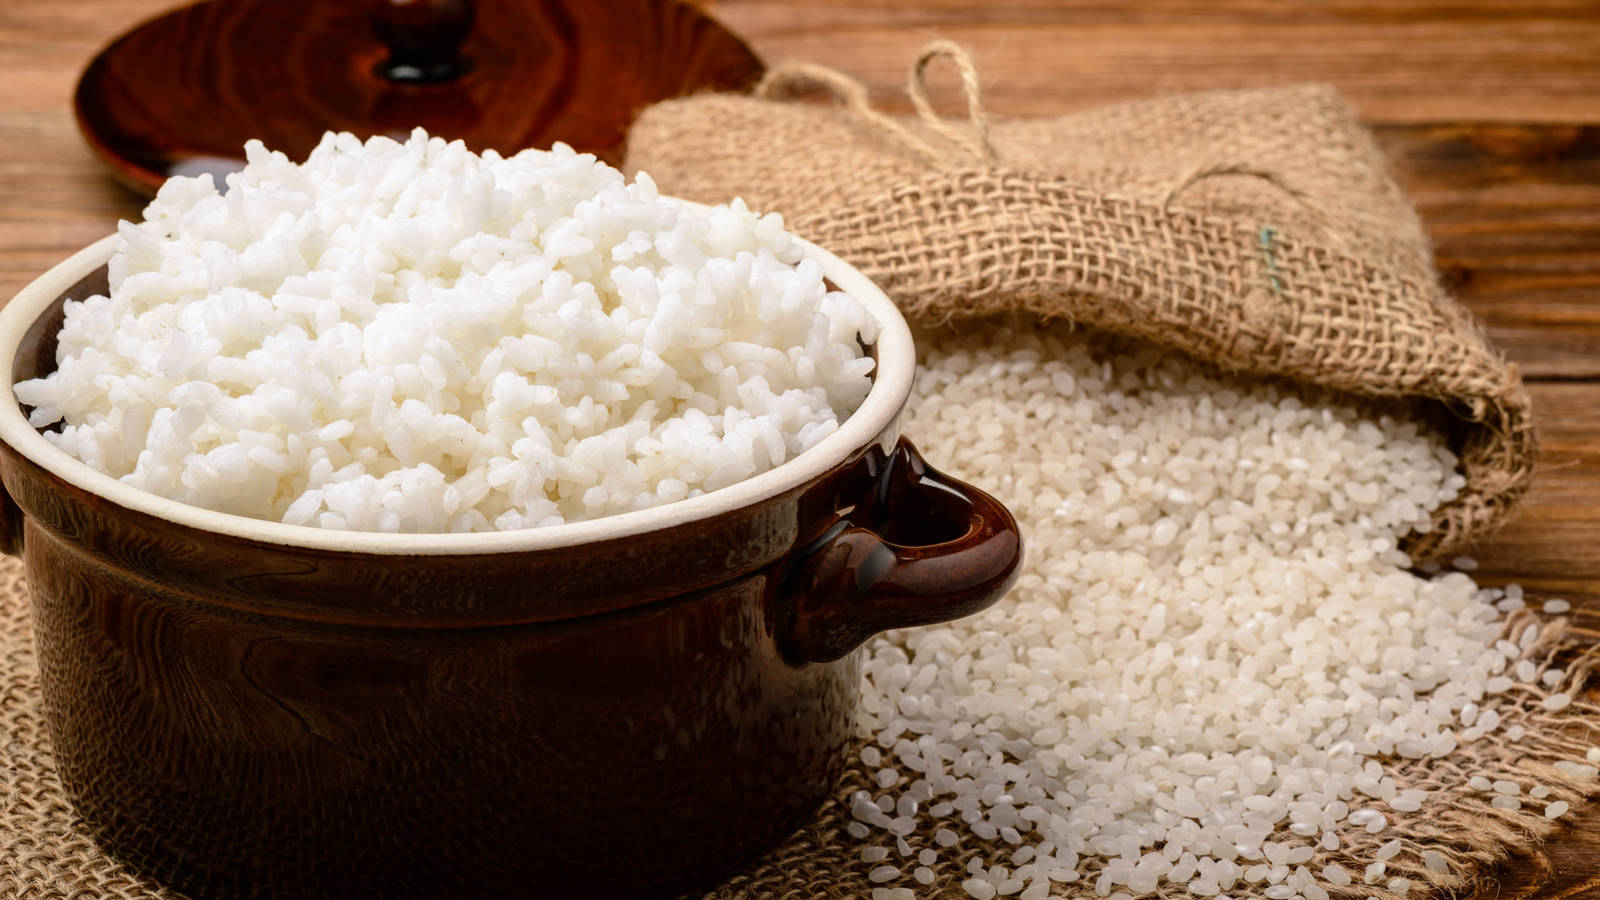 arroz blanco perfecto